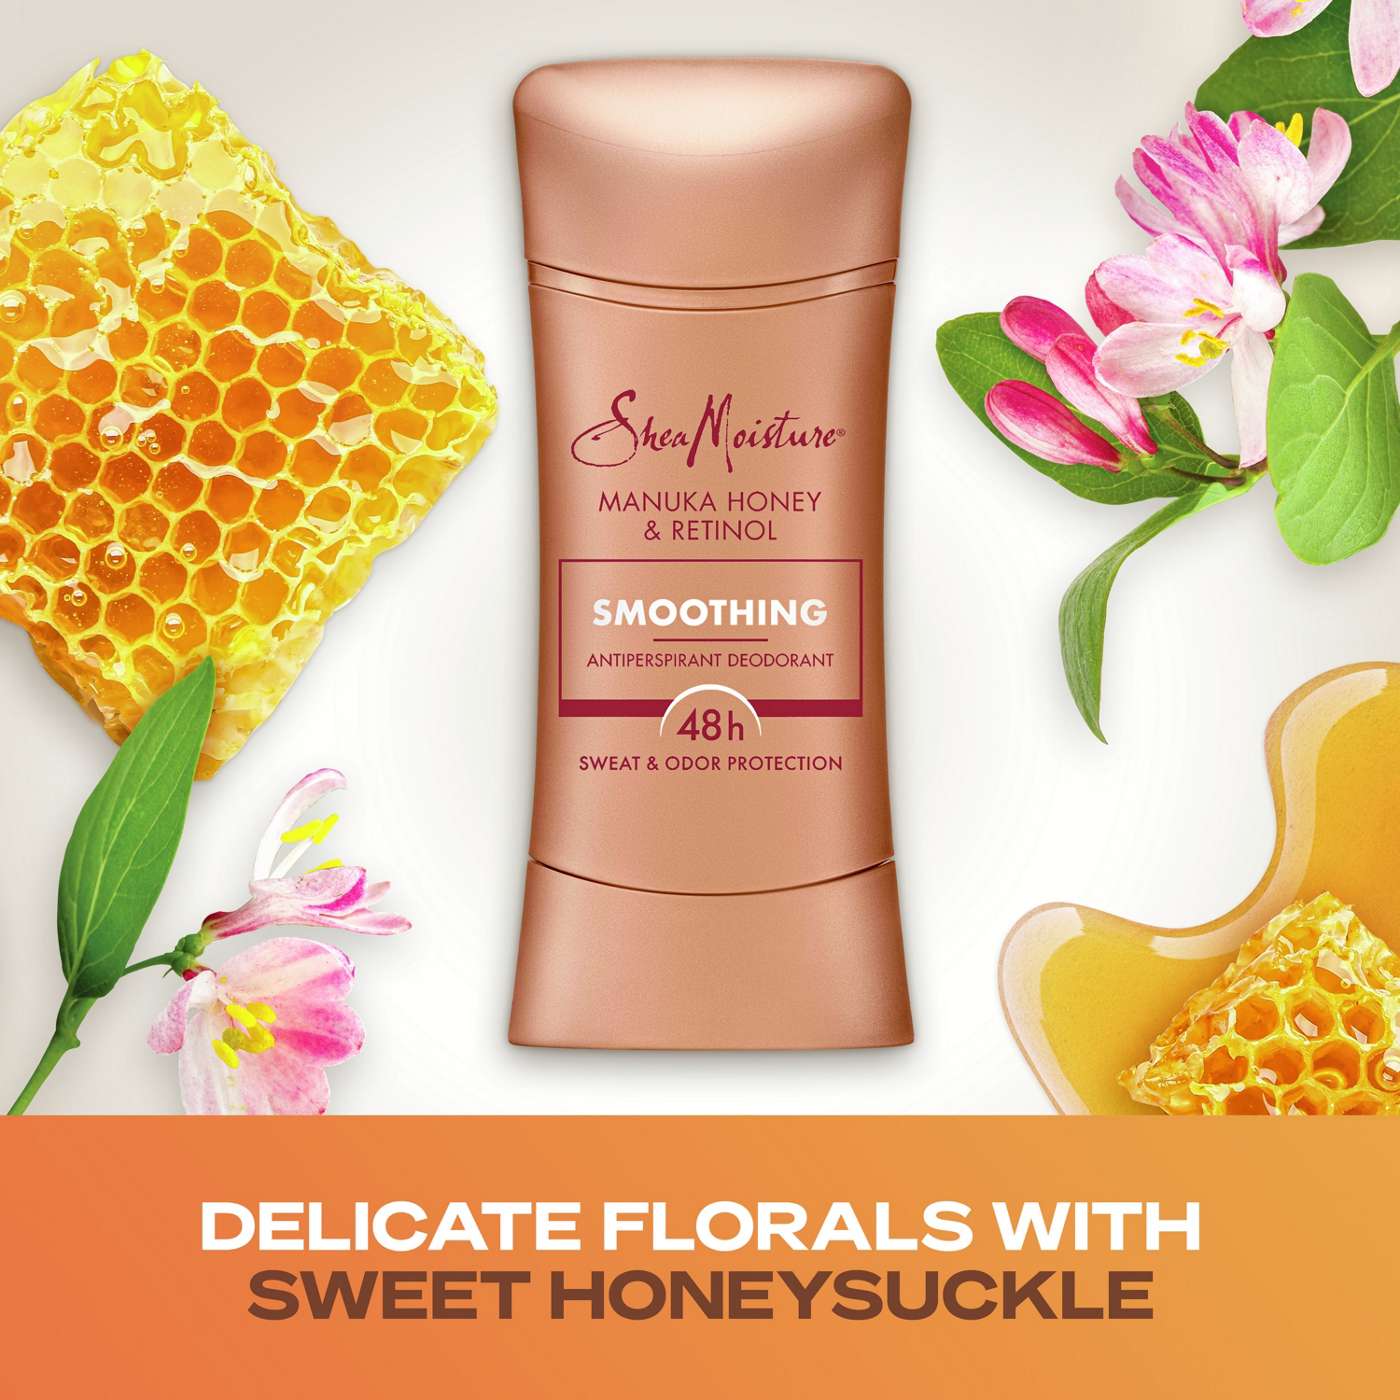 SheaMoisture Smoothing Antiperspirant Deodorant - Manuka Honey & Retinol; image 4 of 9